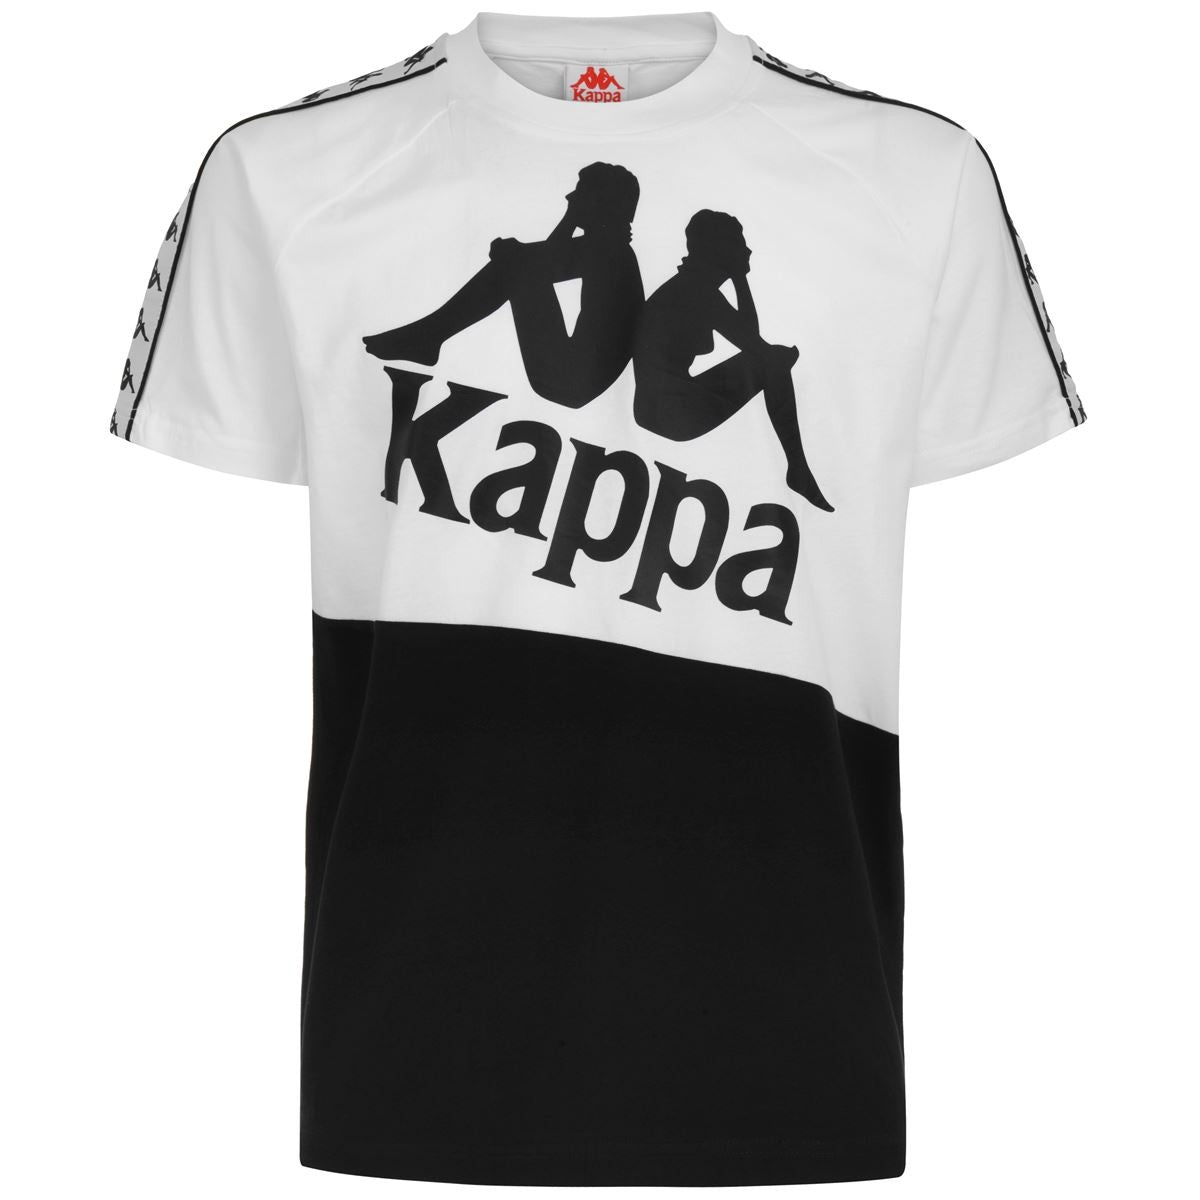 304NQB0 - T-Shirt e Polo - Kappa